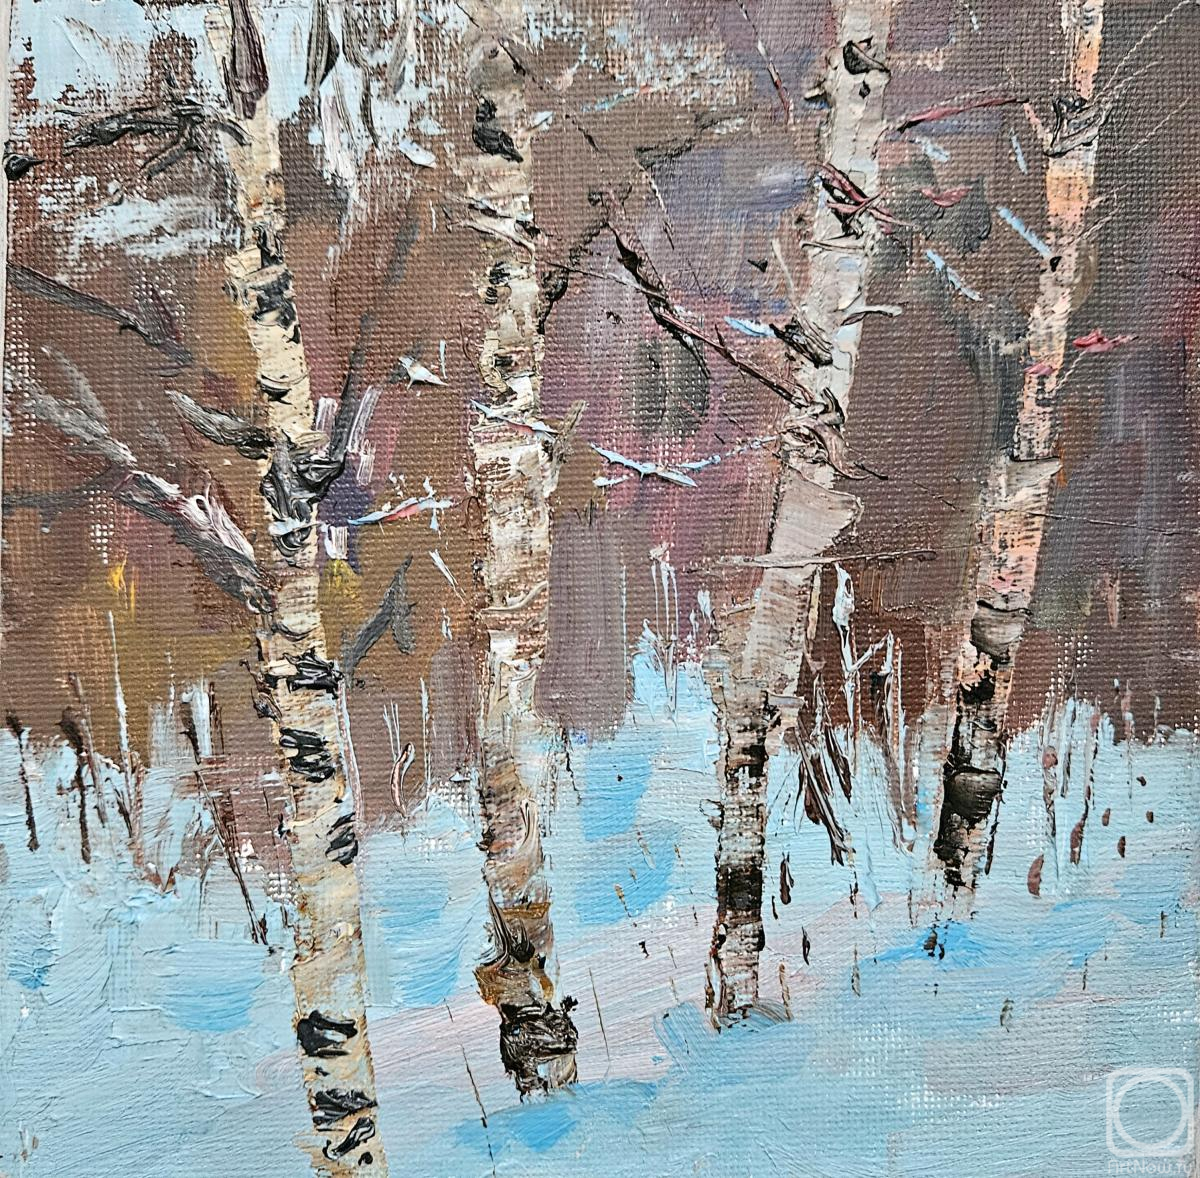 Polzikova Oksana. Etude with birches